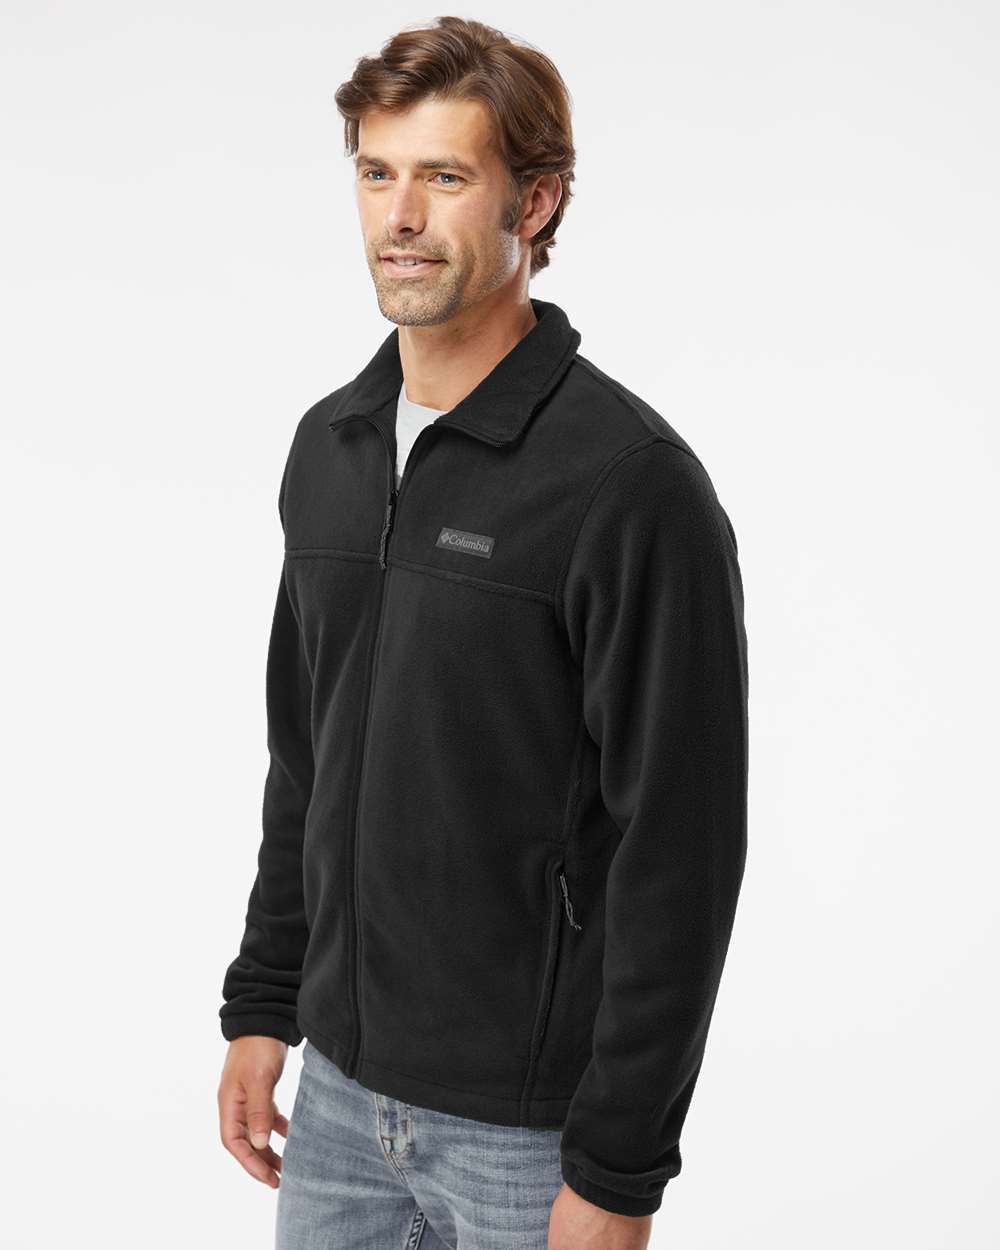 Columbia Steens Mountain Full-Zip 2.0 Fleece Jacket - Men's - Clothing